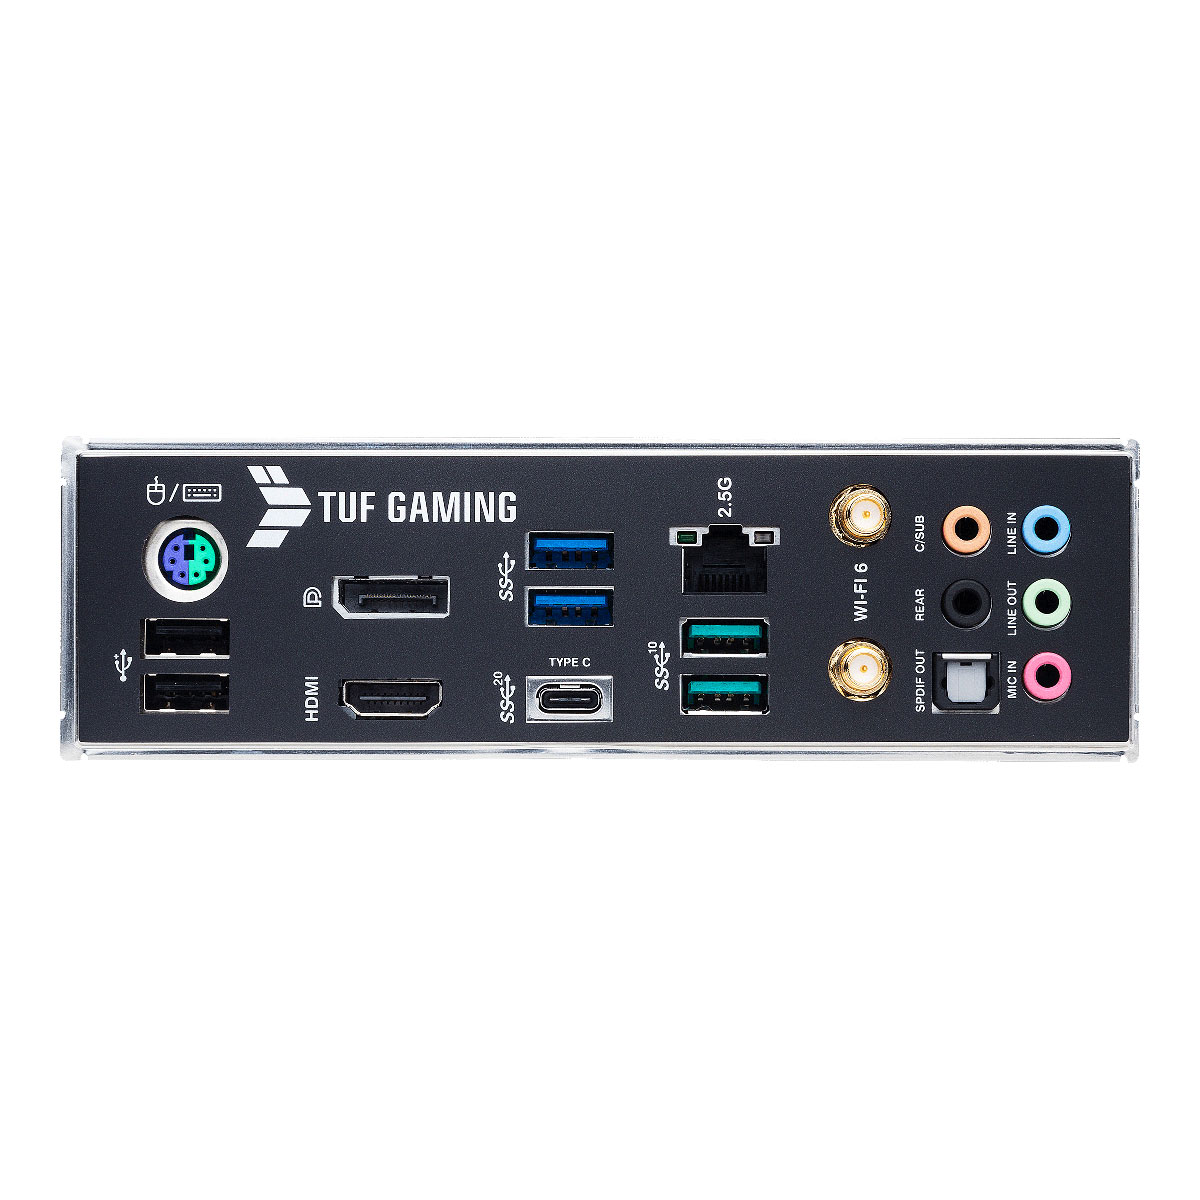 Asus - Asus TUF Gaming Z590-Plus WIFI (Socket LGA 1200) DDR4 ATX Motherboard